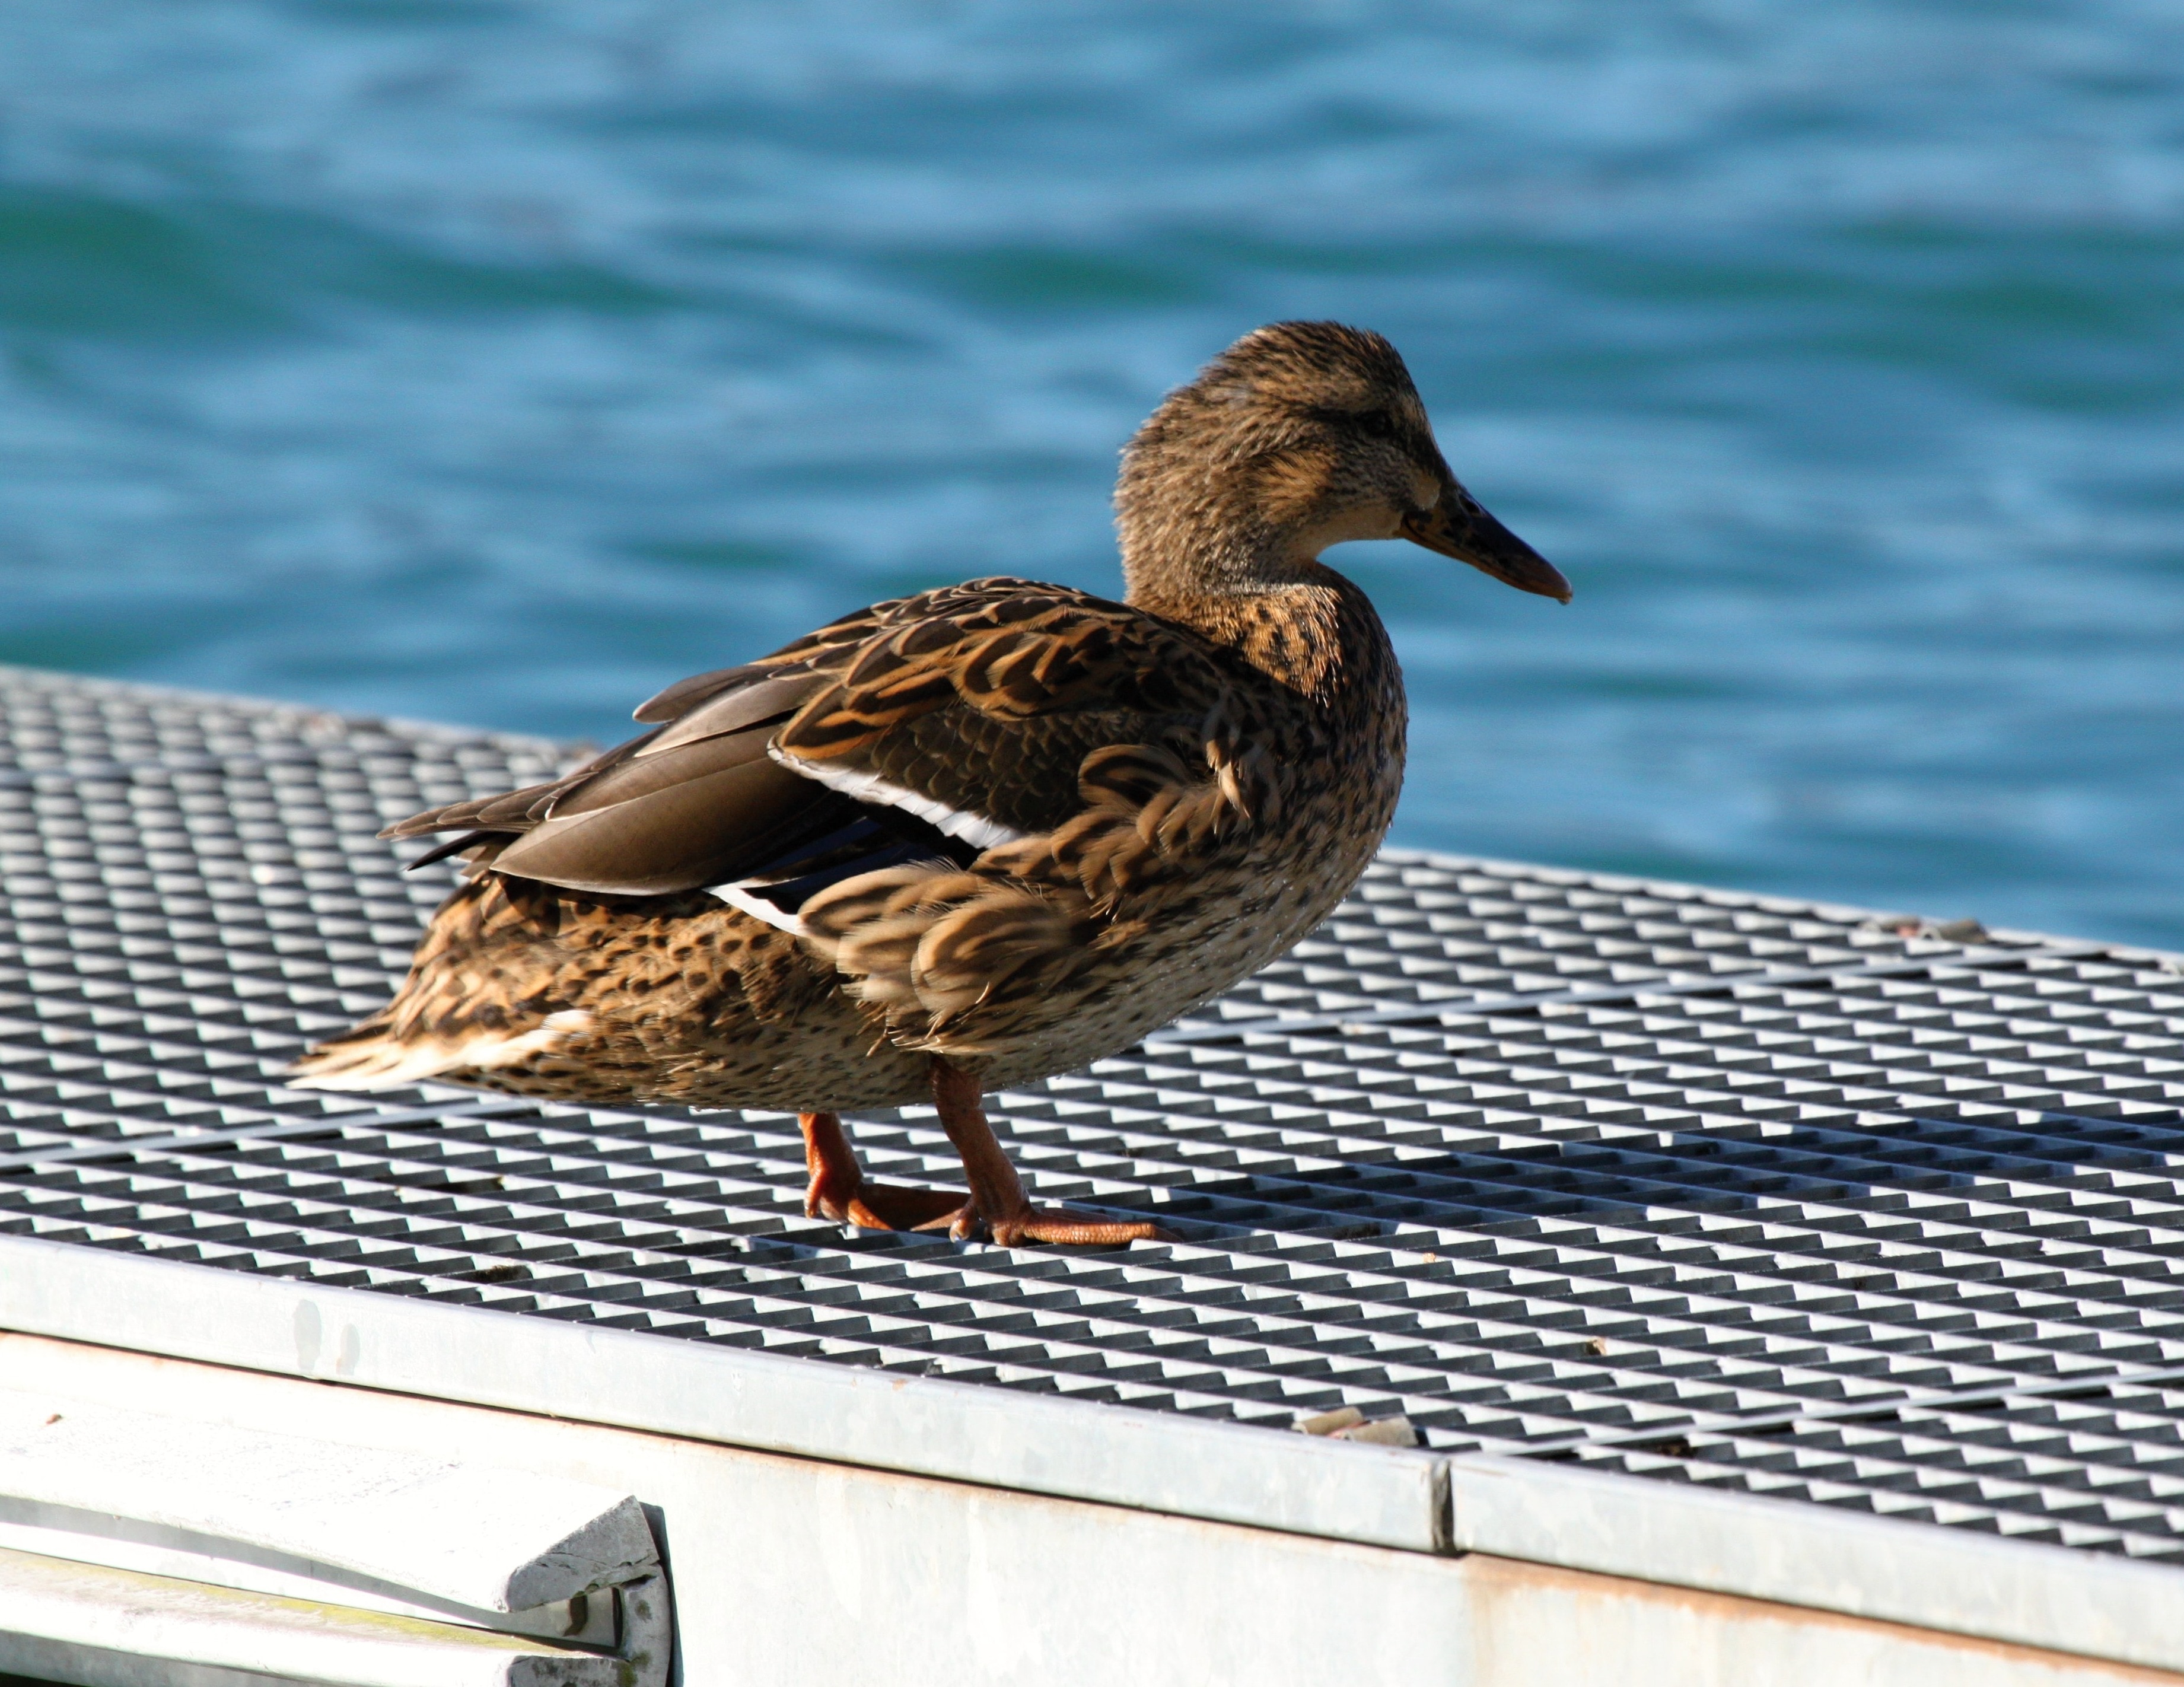 female mallard duck on white metal flat form near body of water